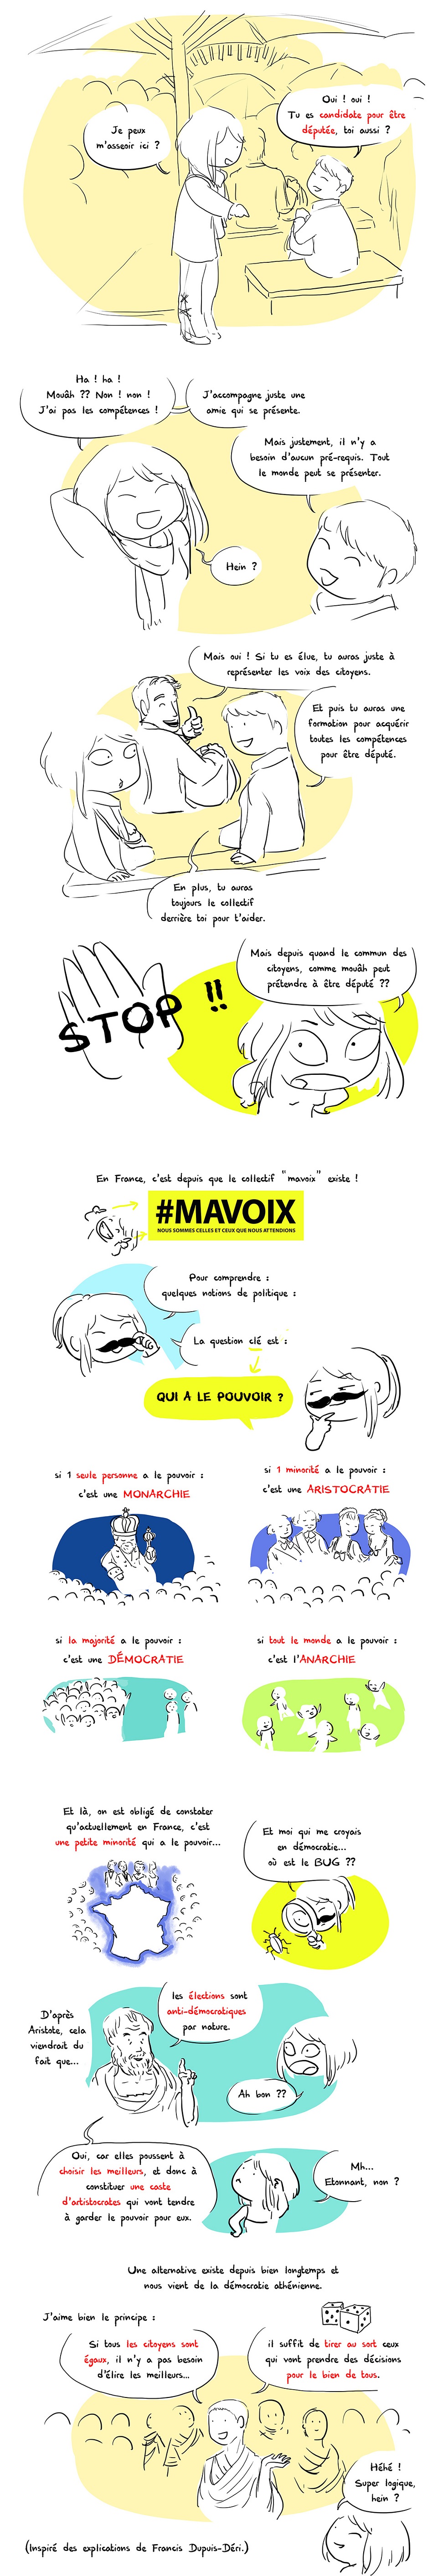 #MAVOIX